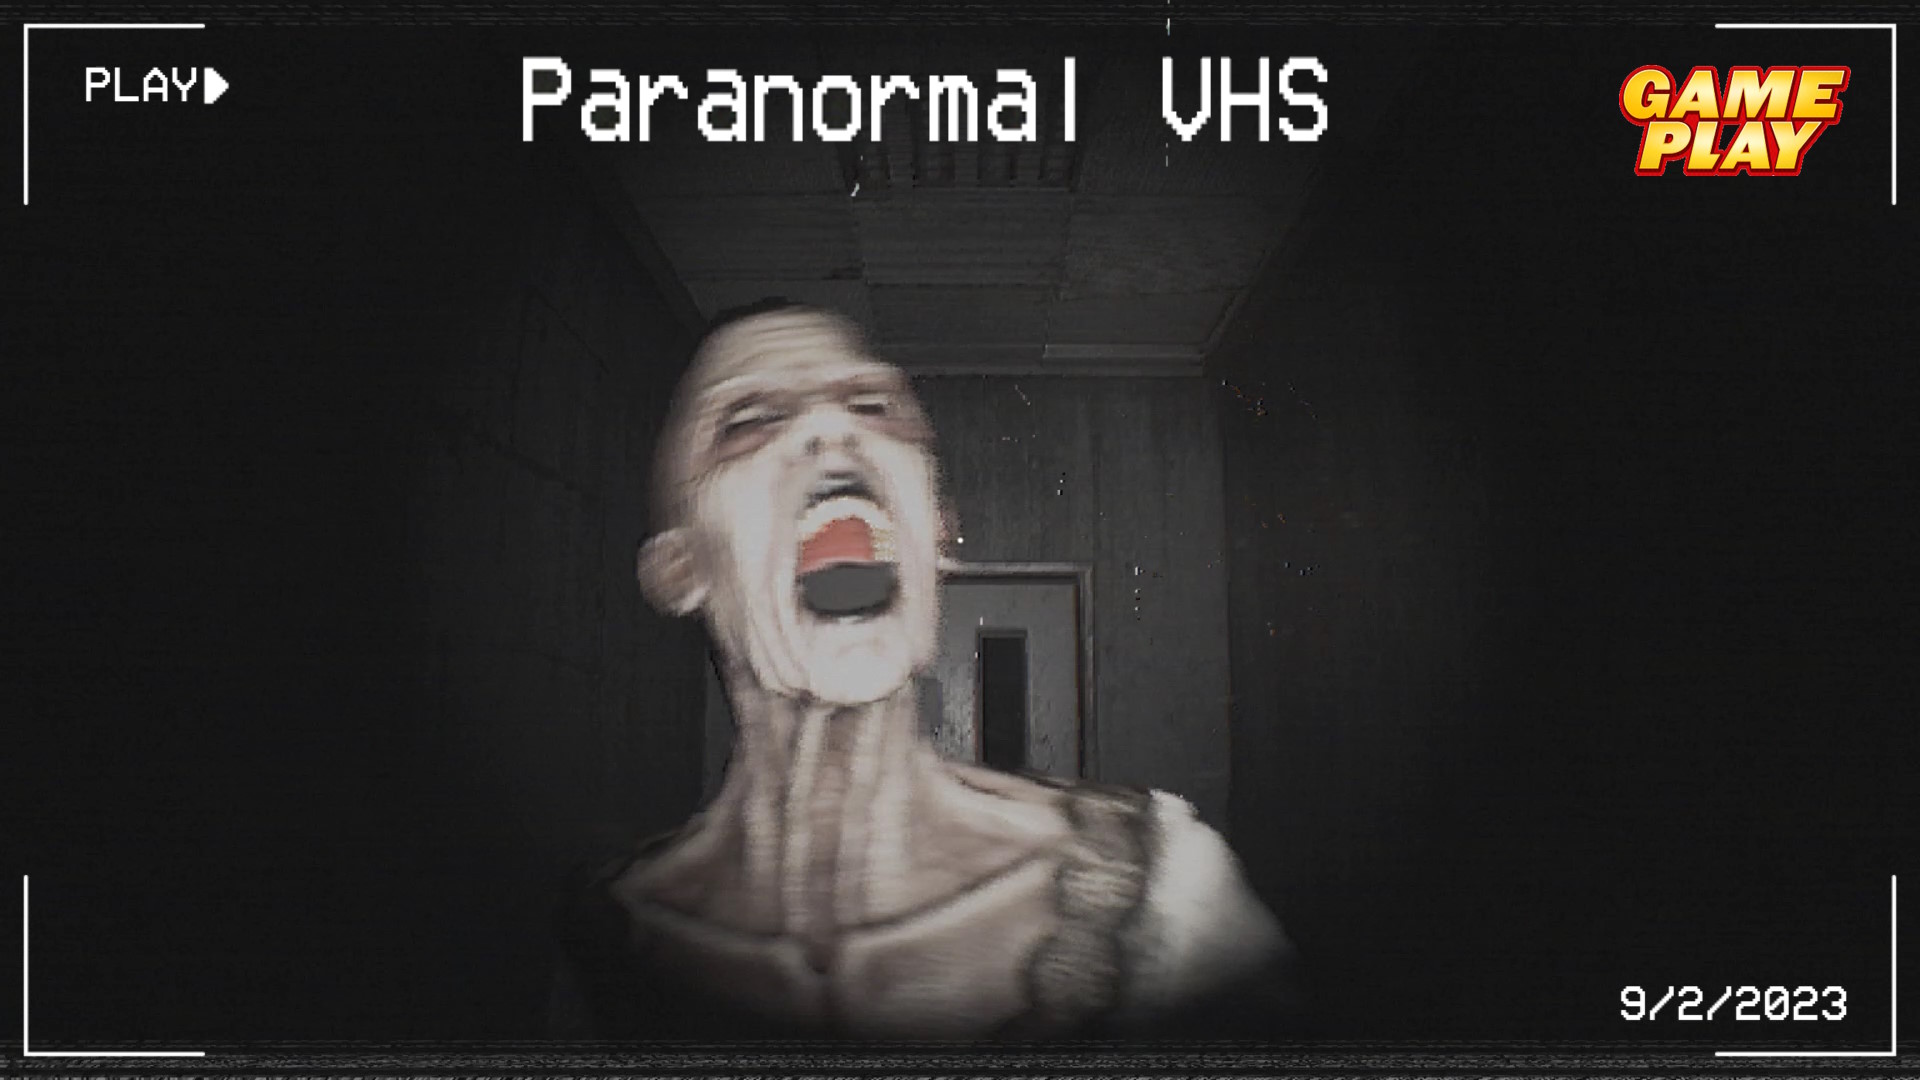 Paranormal VHS ✅ Ужастик в больнице с видеокамерой и призраками ✅ ПК Steam игра 2023